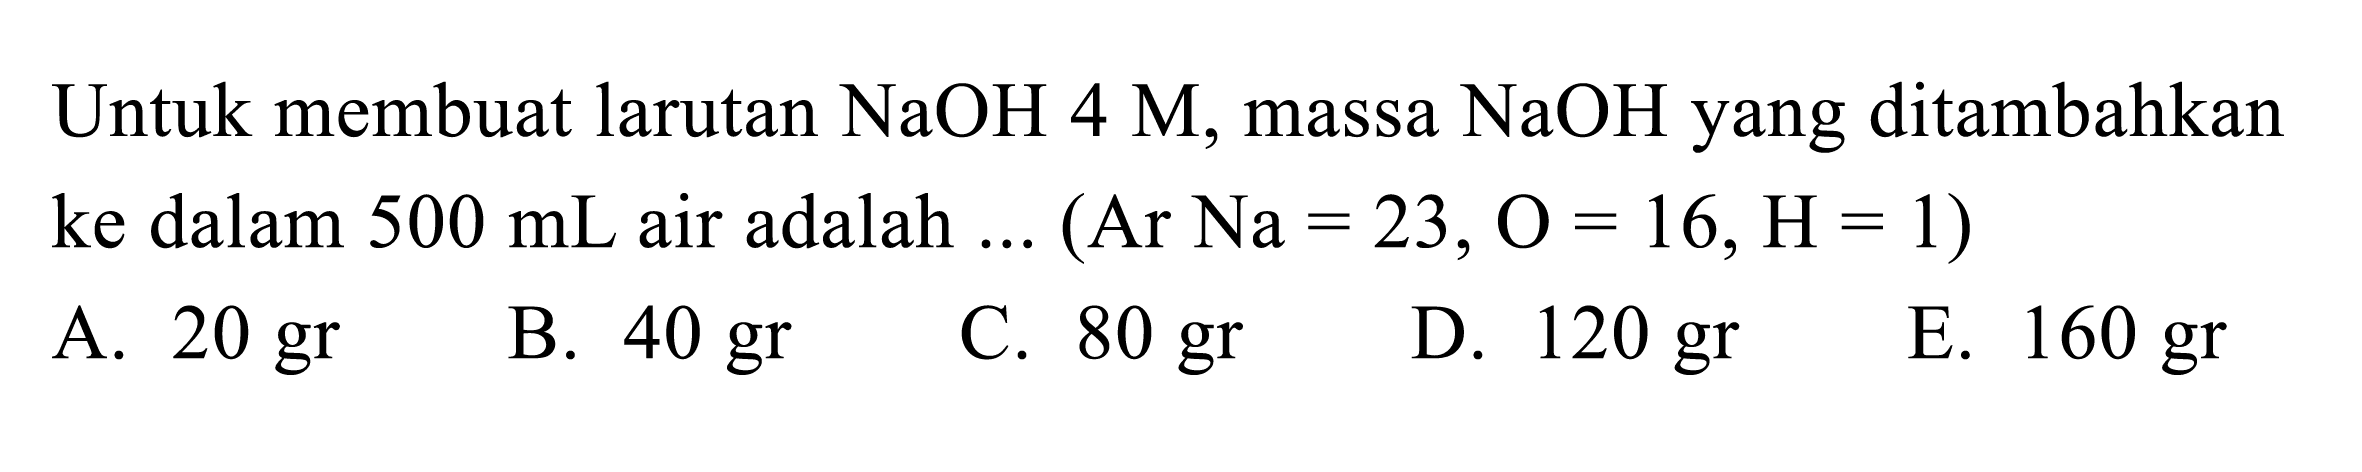 Untuk membuat larutan NaOH 4 M, massa NaOH yang ditambahkan ke dalam 500 mL air adalah ... (Ar Na = 23, O = 16, H = 1) 
